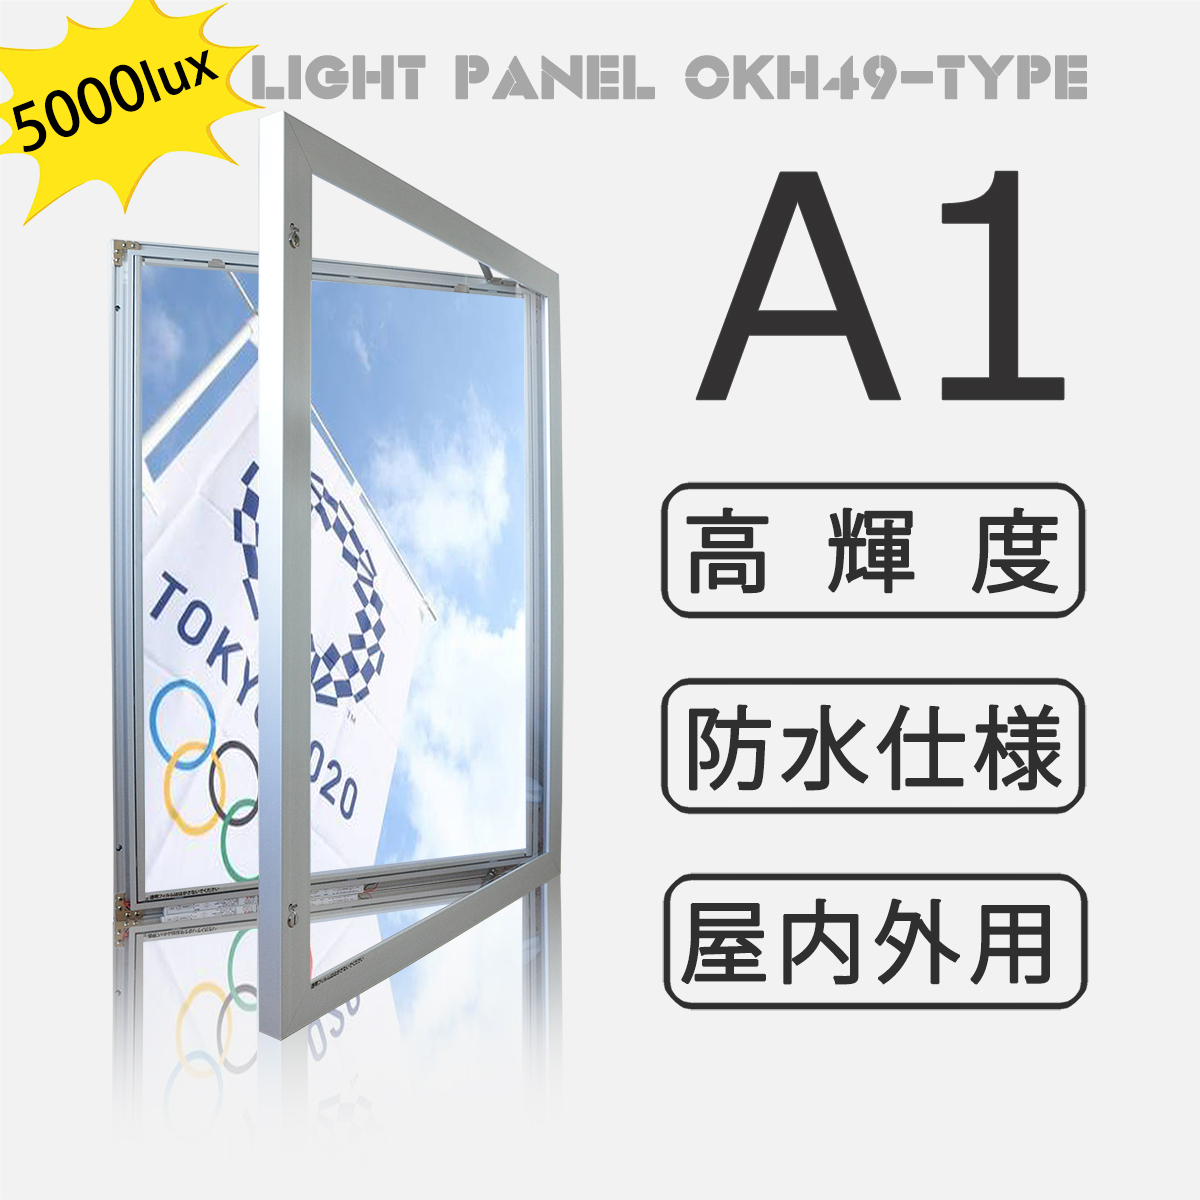 OKH49-A1-SV】屋内外兼用 LEDライトパネル A1 シルバー 高輝度5000LUX 